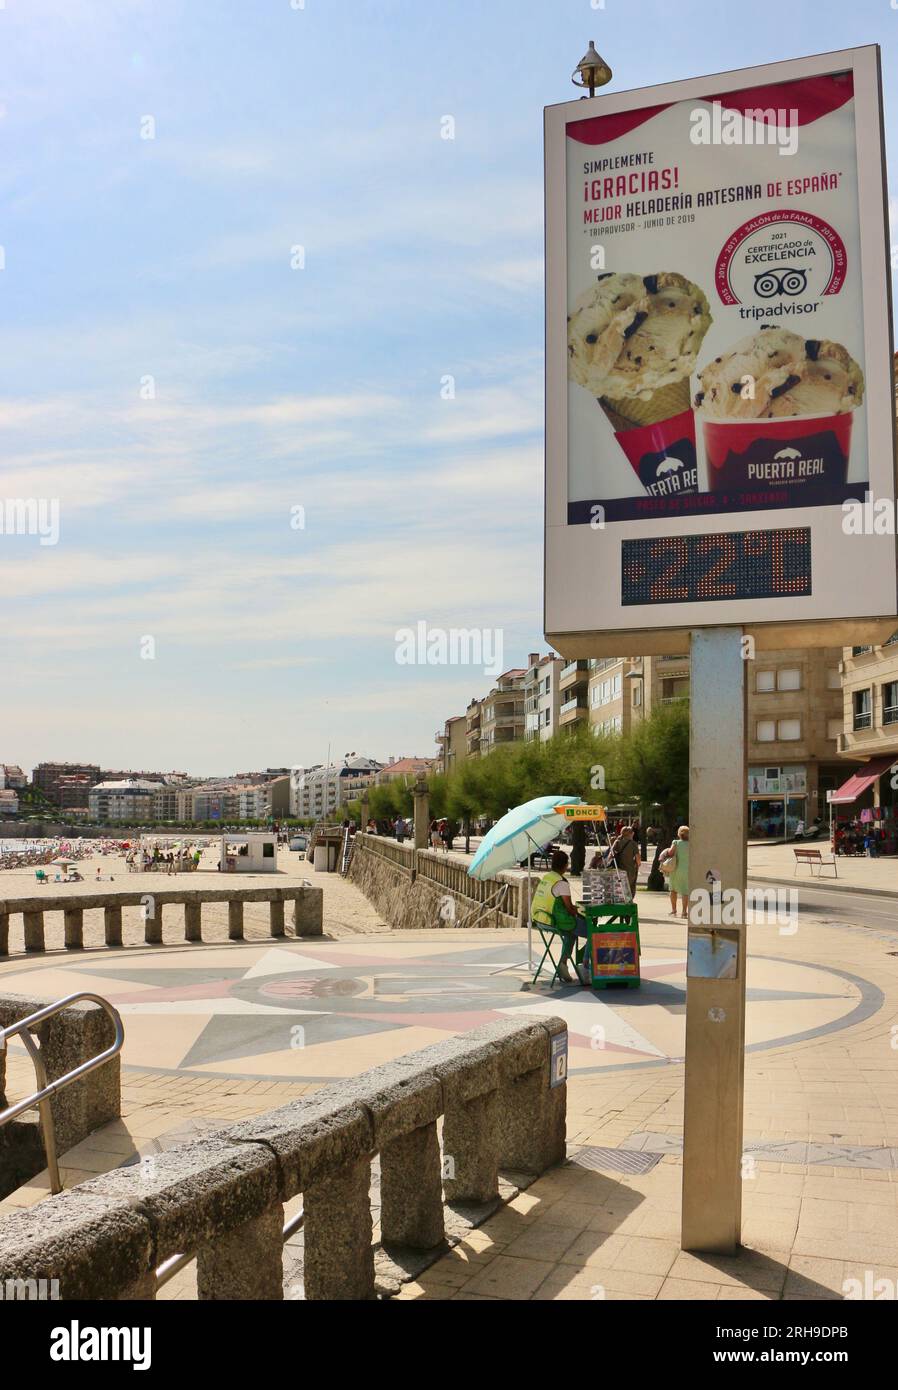 Vista paisajística de la playa de Silgar y paseo marítimo con un signo de mejor helado de España y una vez Puesto de Lotería Sangenjo Sanxenxo Pontevedra Galicia España Foto de stock